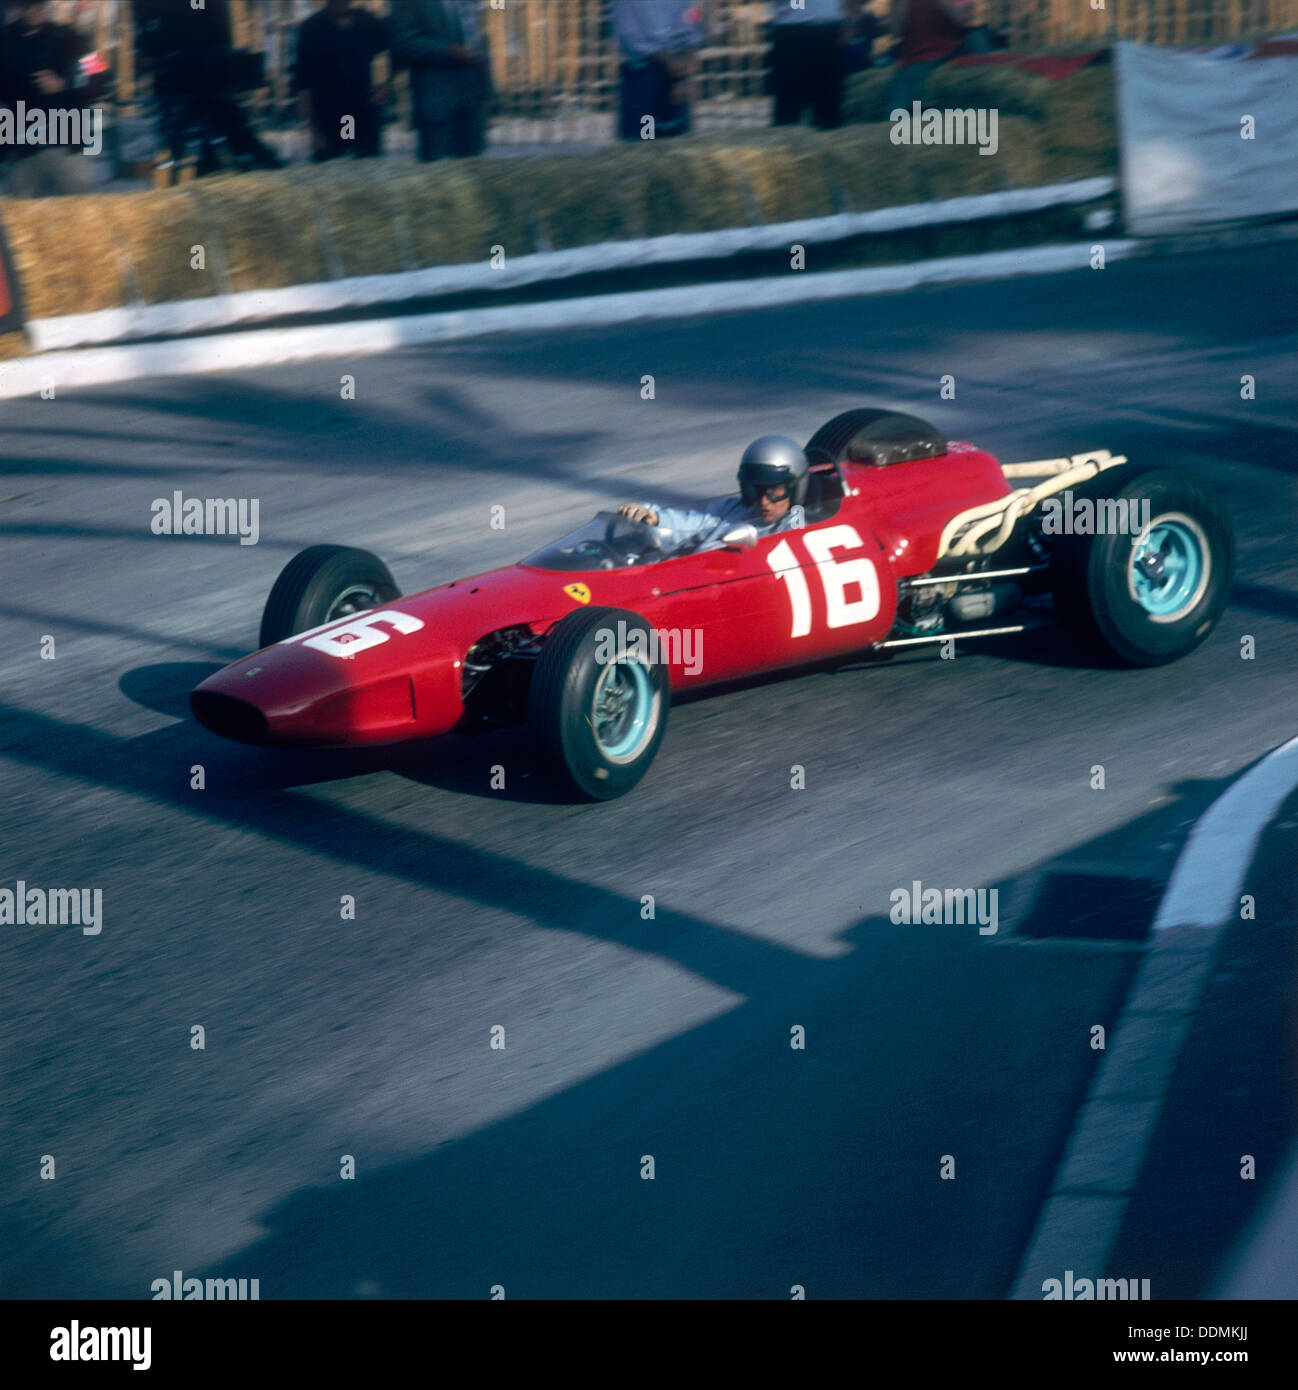 Lorenzo Bandini au volant d'une Ferrari 246, dans le Grand Prix de Monaco, Monte Carlo, 1966. Artiste : Inconnu Banque D'Images